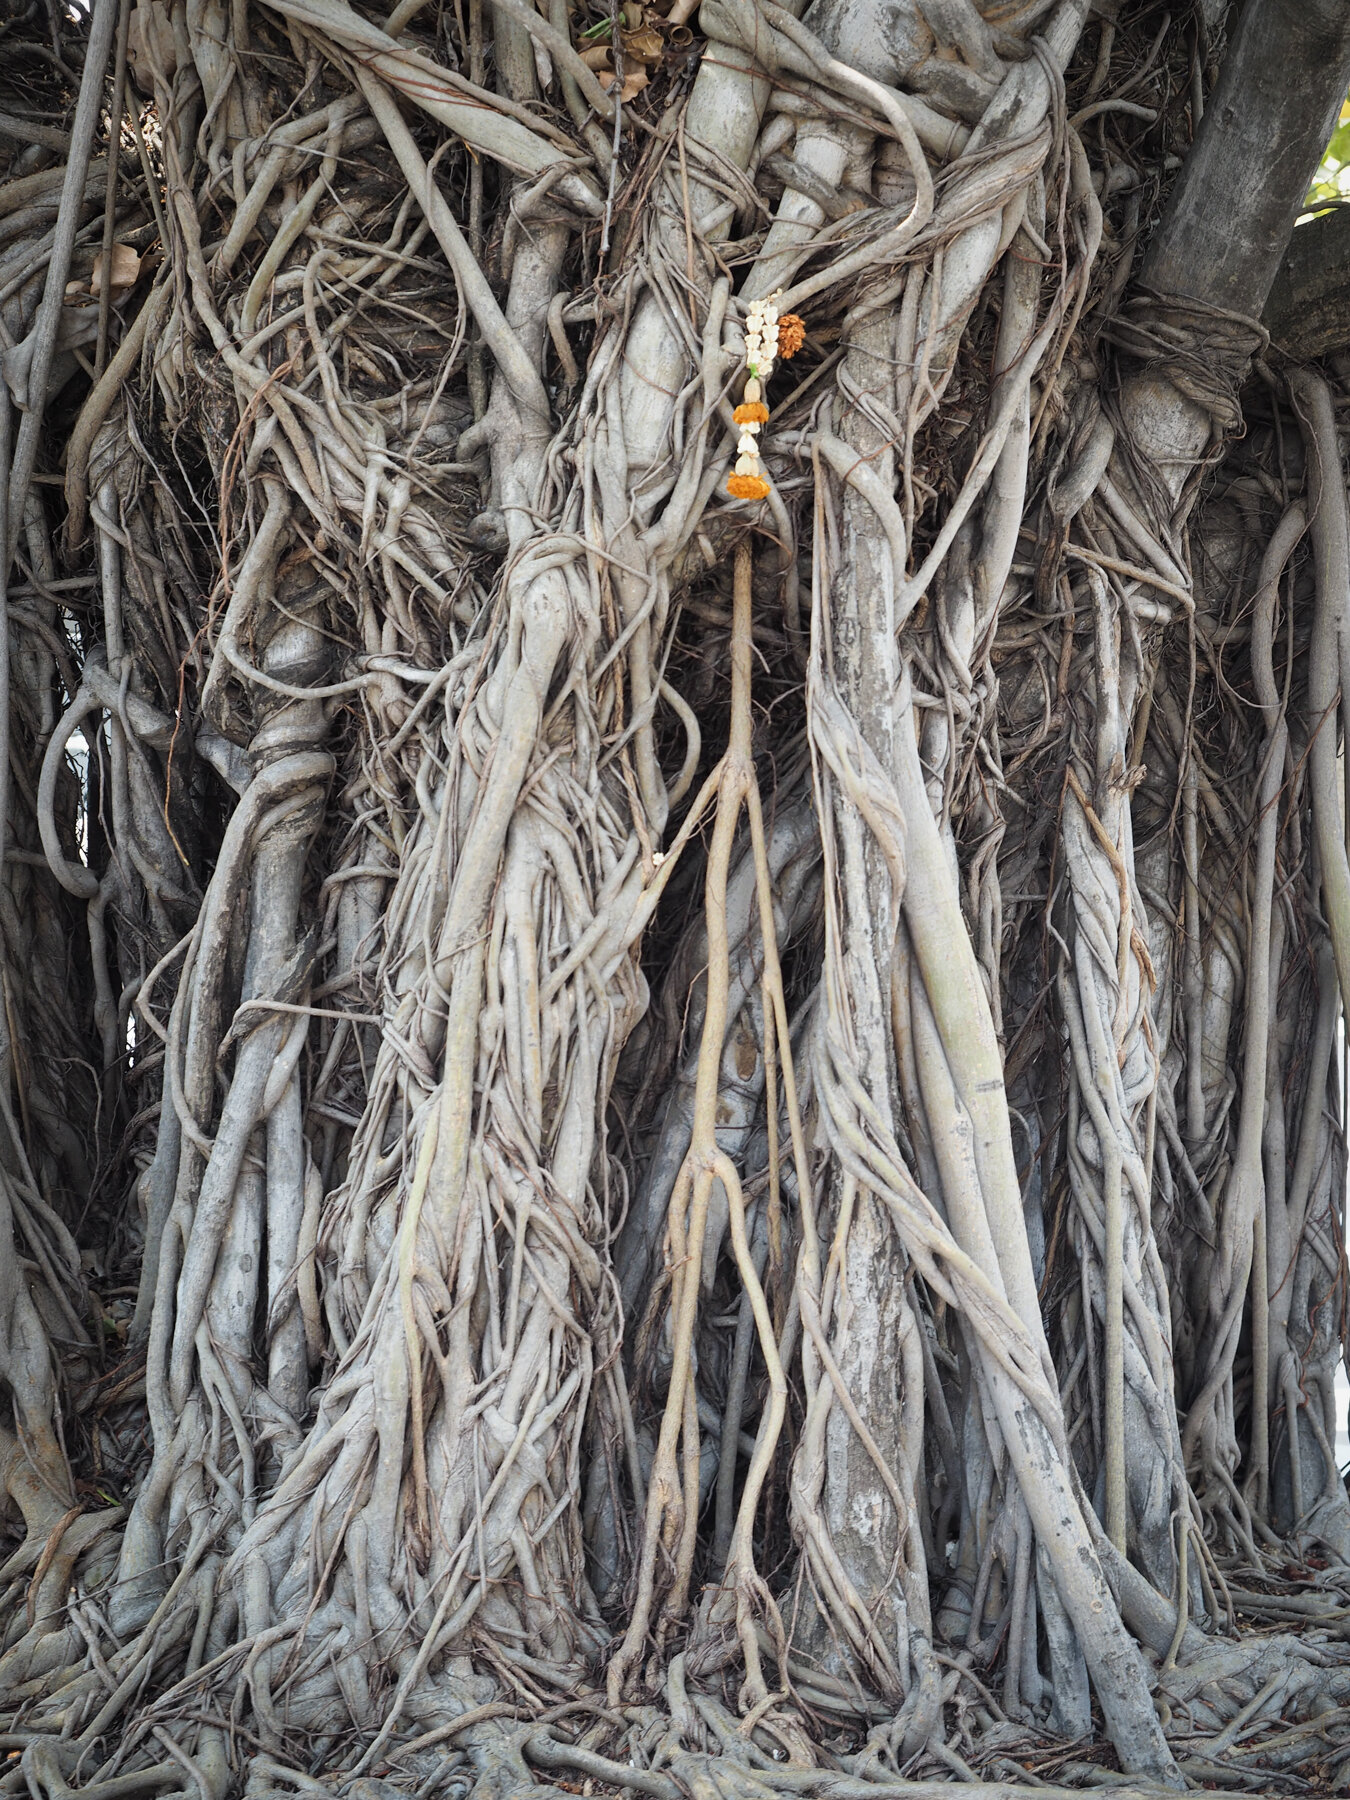 Banyan Tree roots